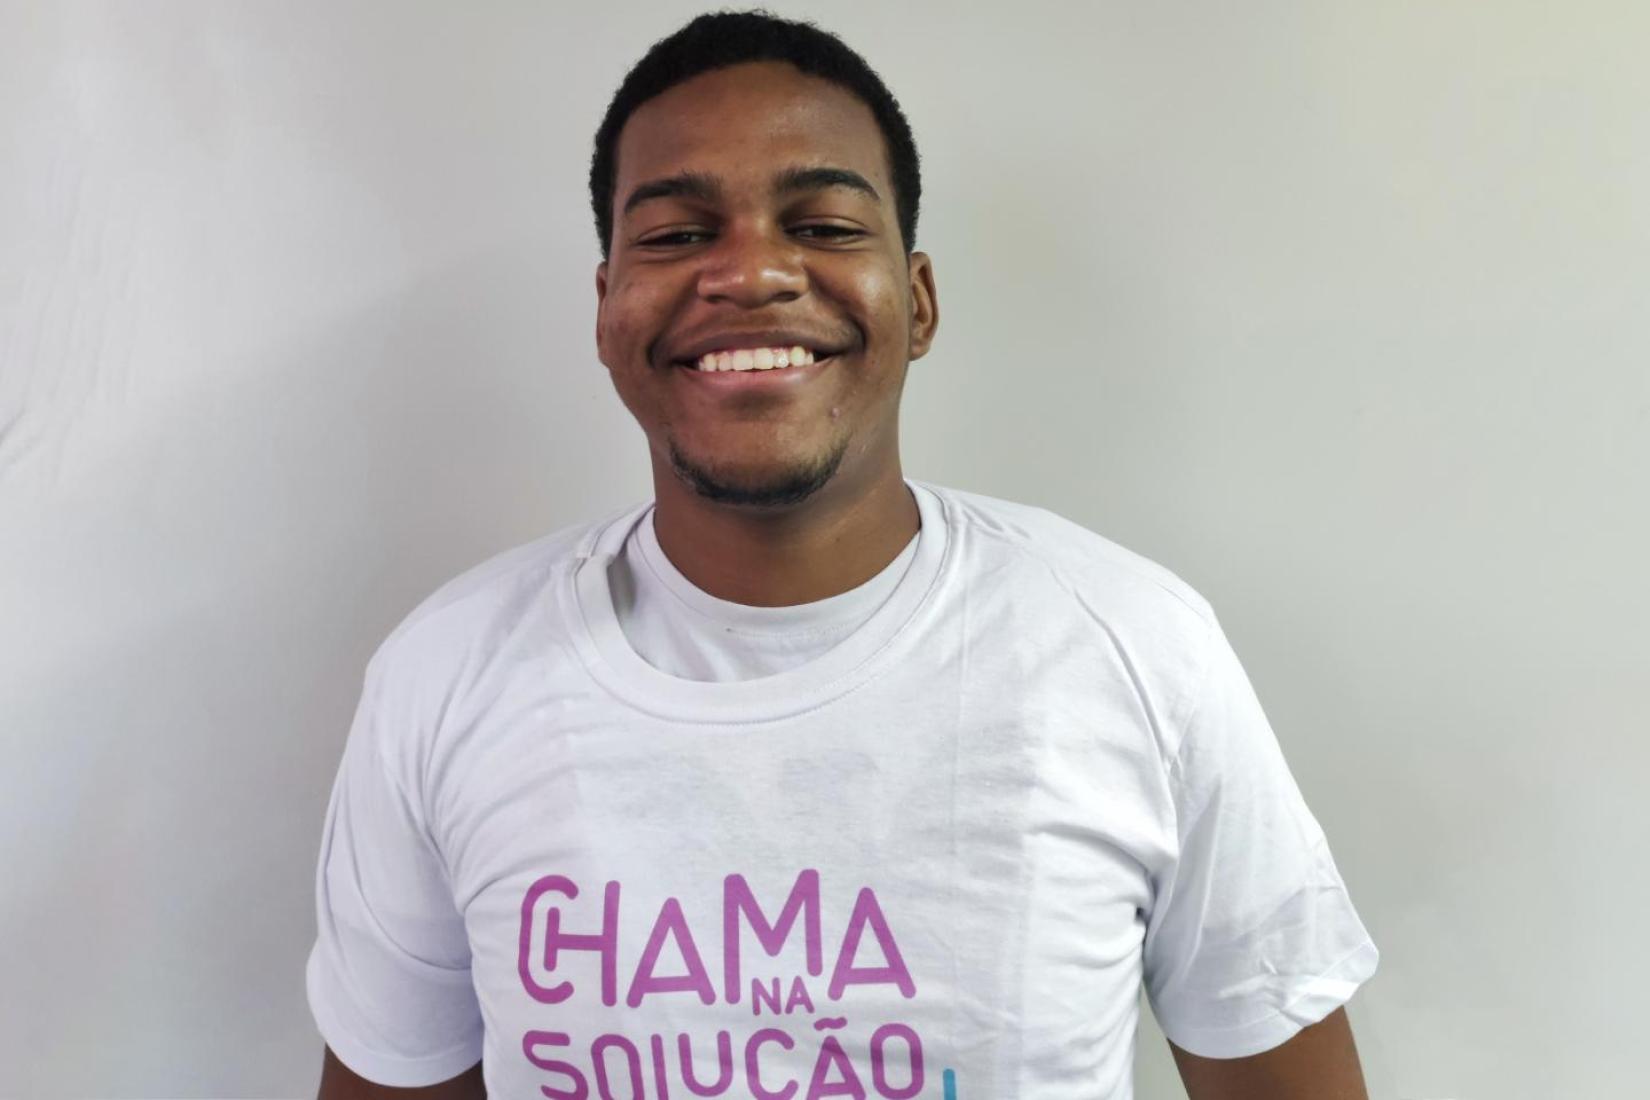 "Nada se resolve com violência". Com essa certeza, o jovem Adriano Cypriano participou do projeto Chama na Solução 2022, na cidade do Rio de Janeiro.